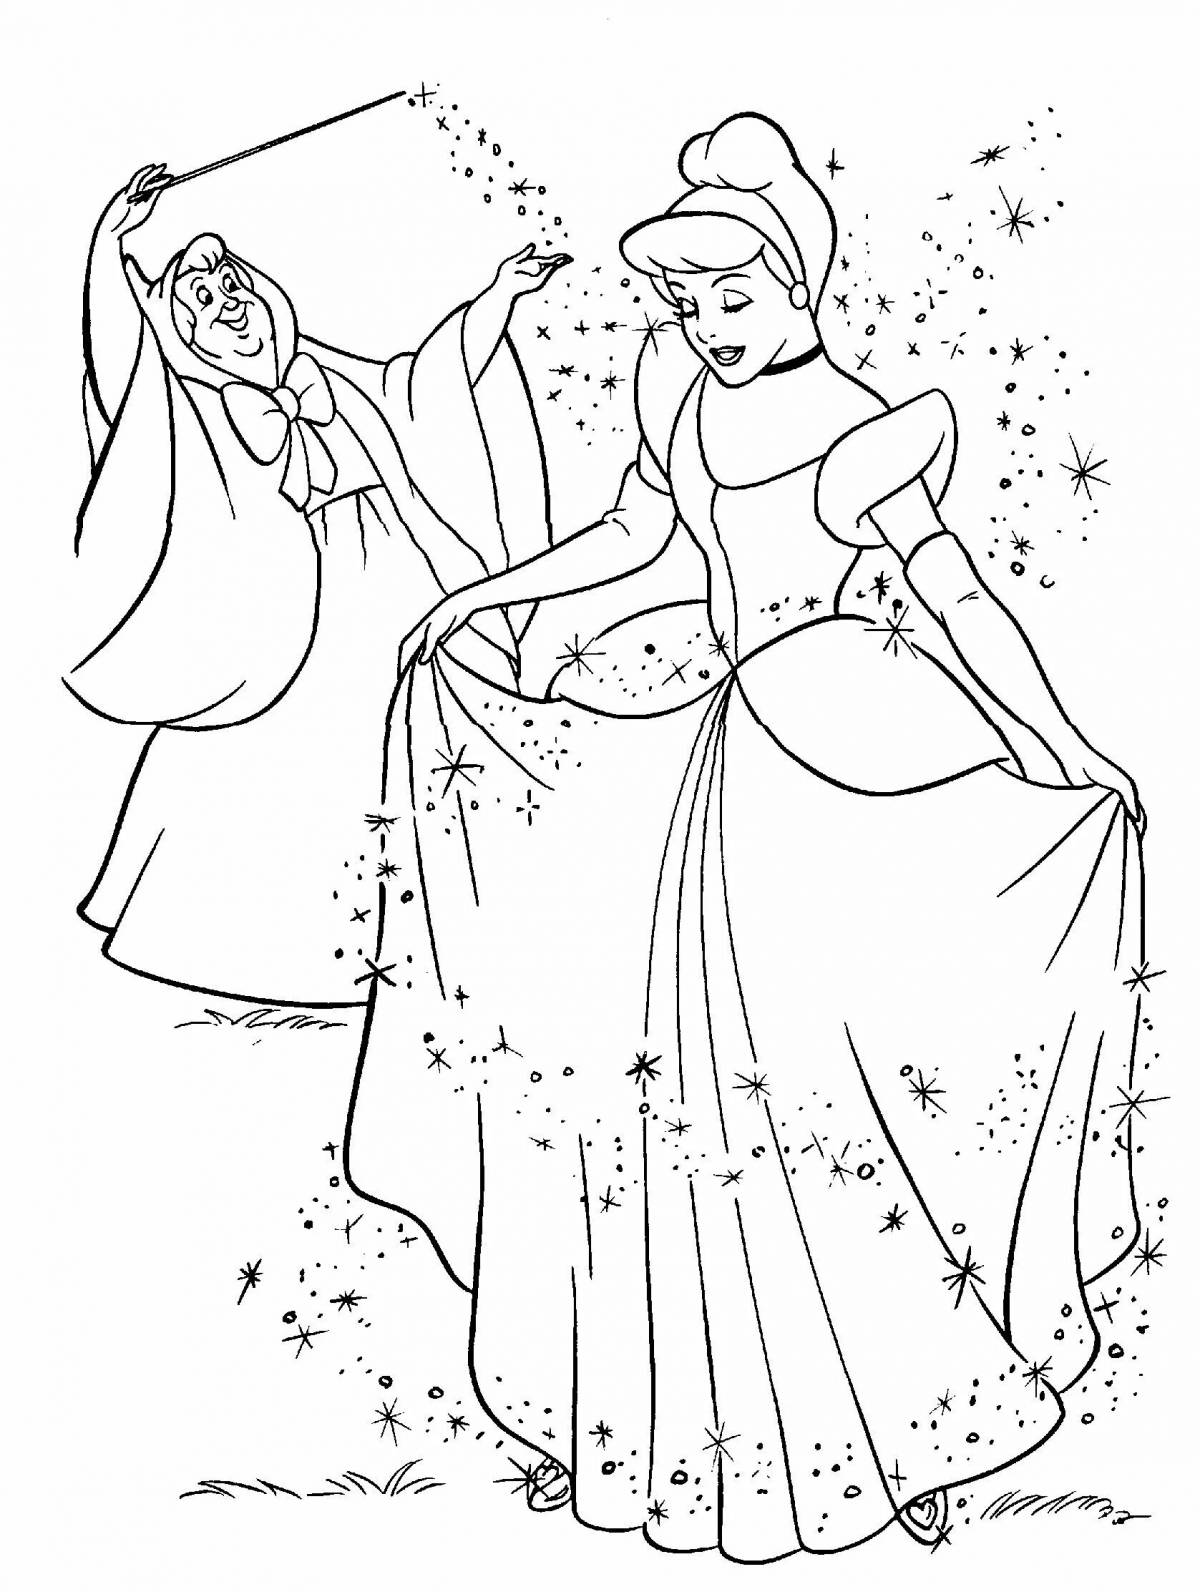 Disney's dainty Cinderella coloring book